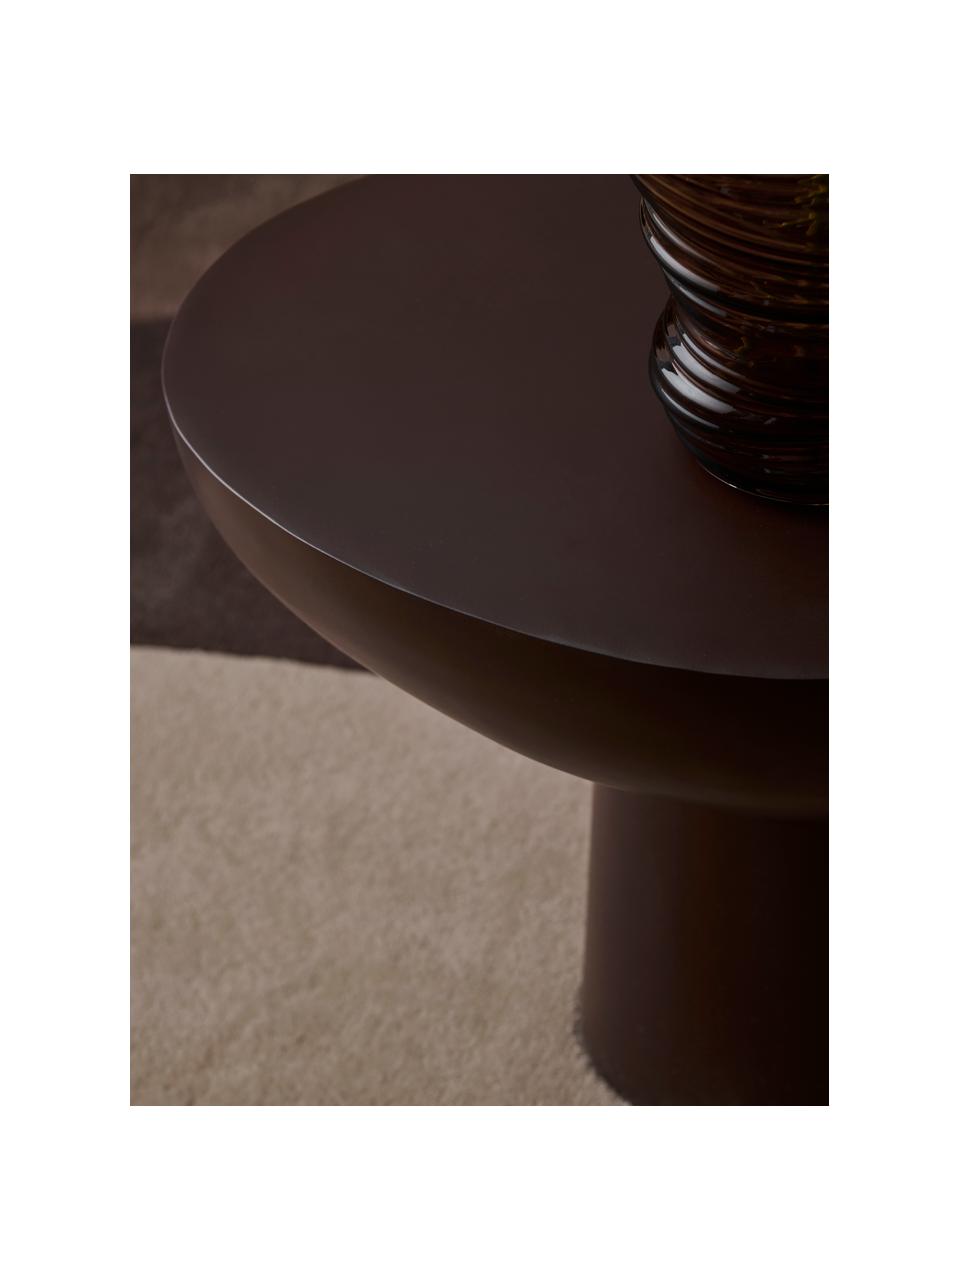 Kovový odkládací stolek Miblo, Potažený hliník, Hnědá, Š 51 cm, V 48 cm